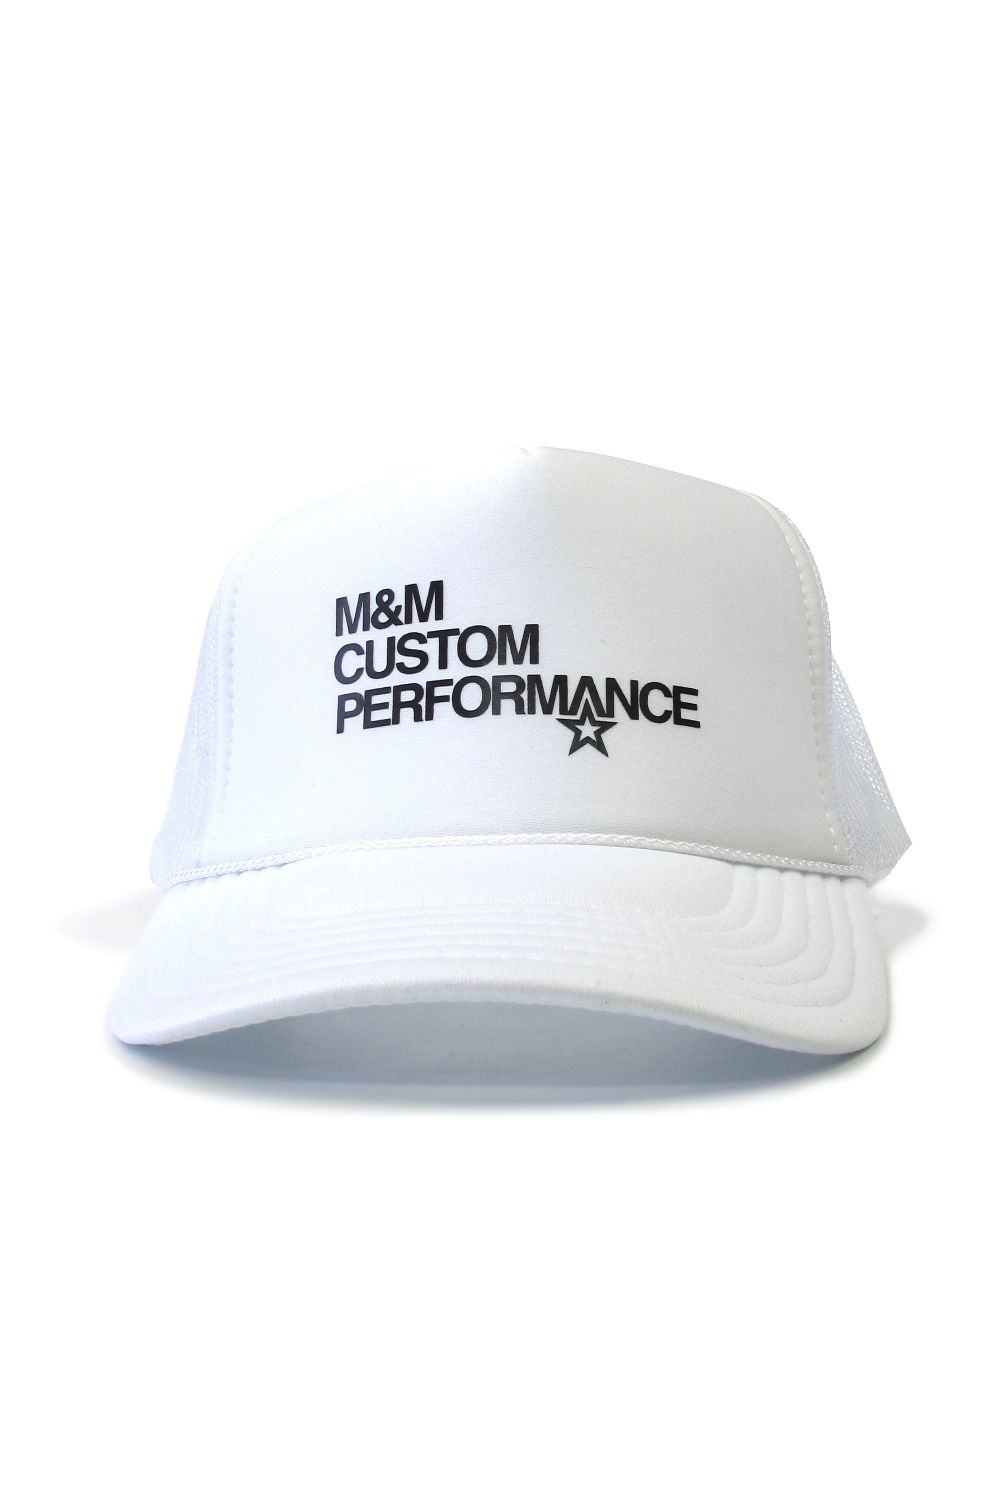 M&M CUSTOM PERFORMANCE - PRINT MESH CAP (GRAY) / プリントメッシュ 